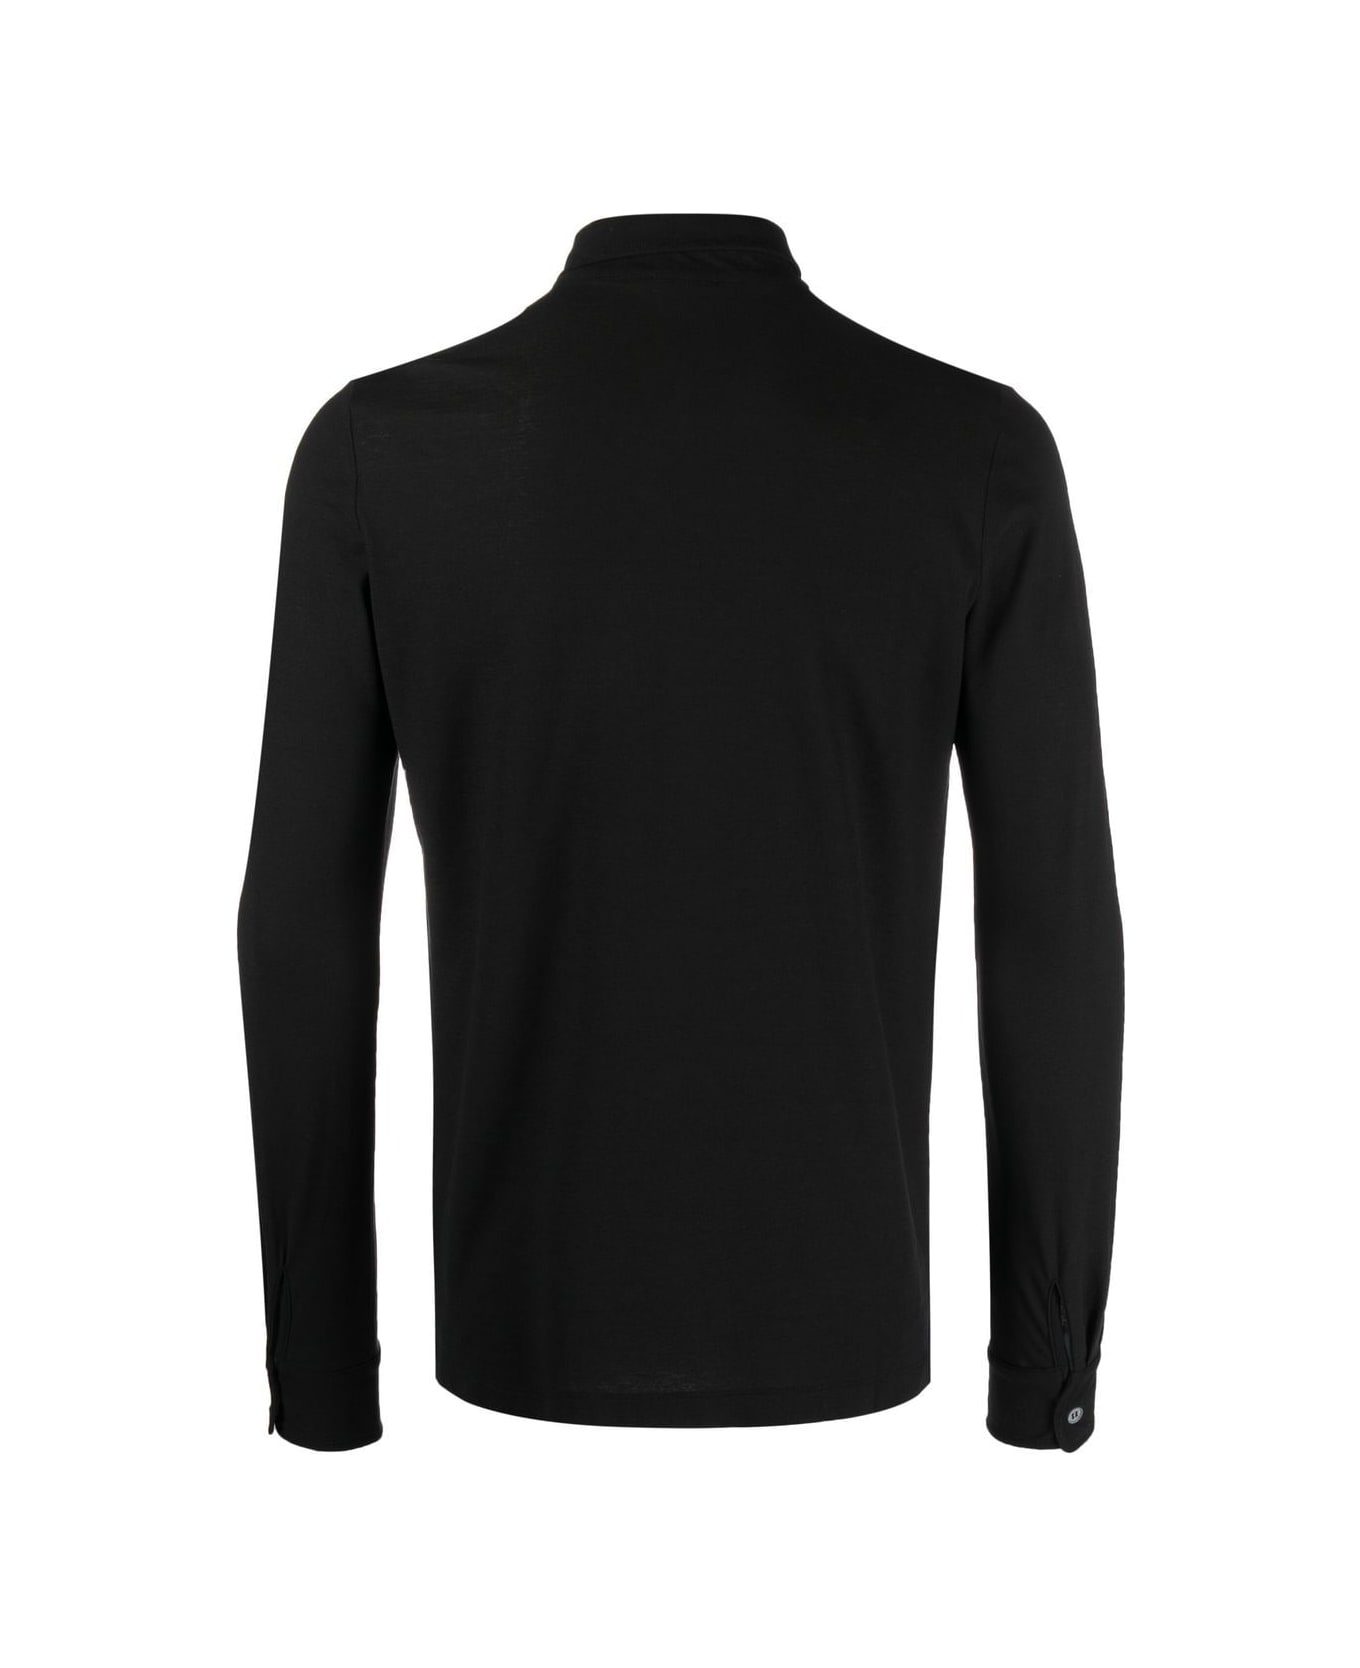 Zanone Shirt - Black